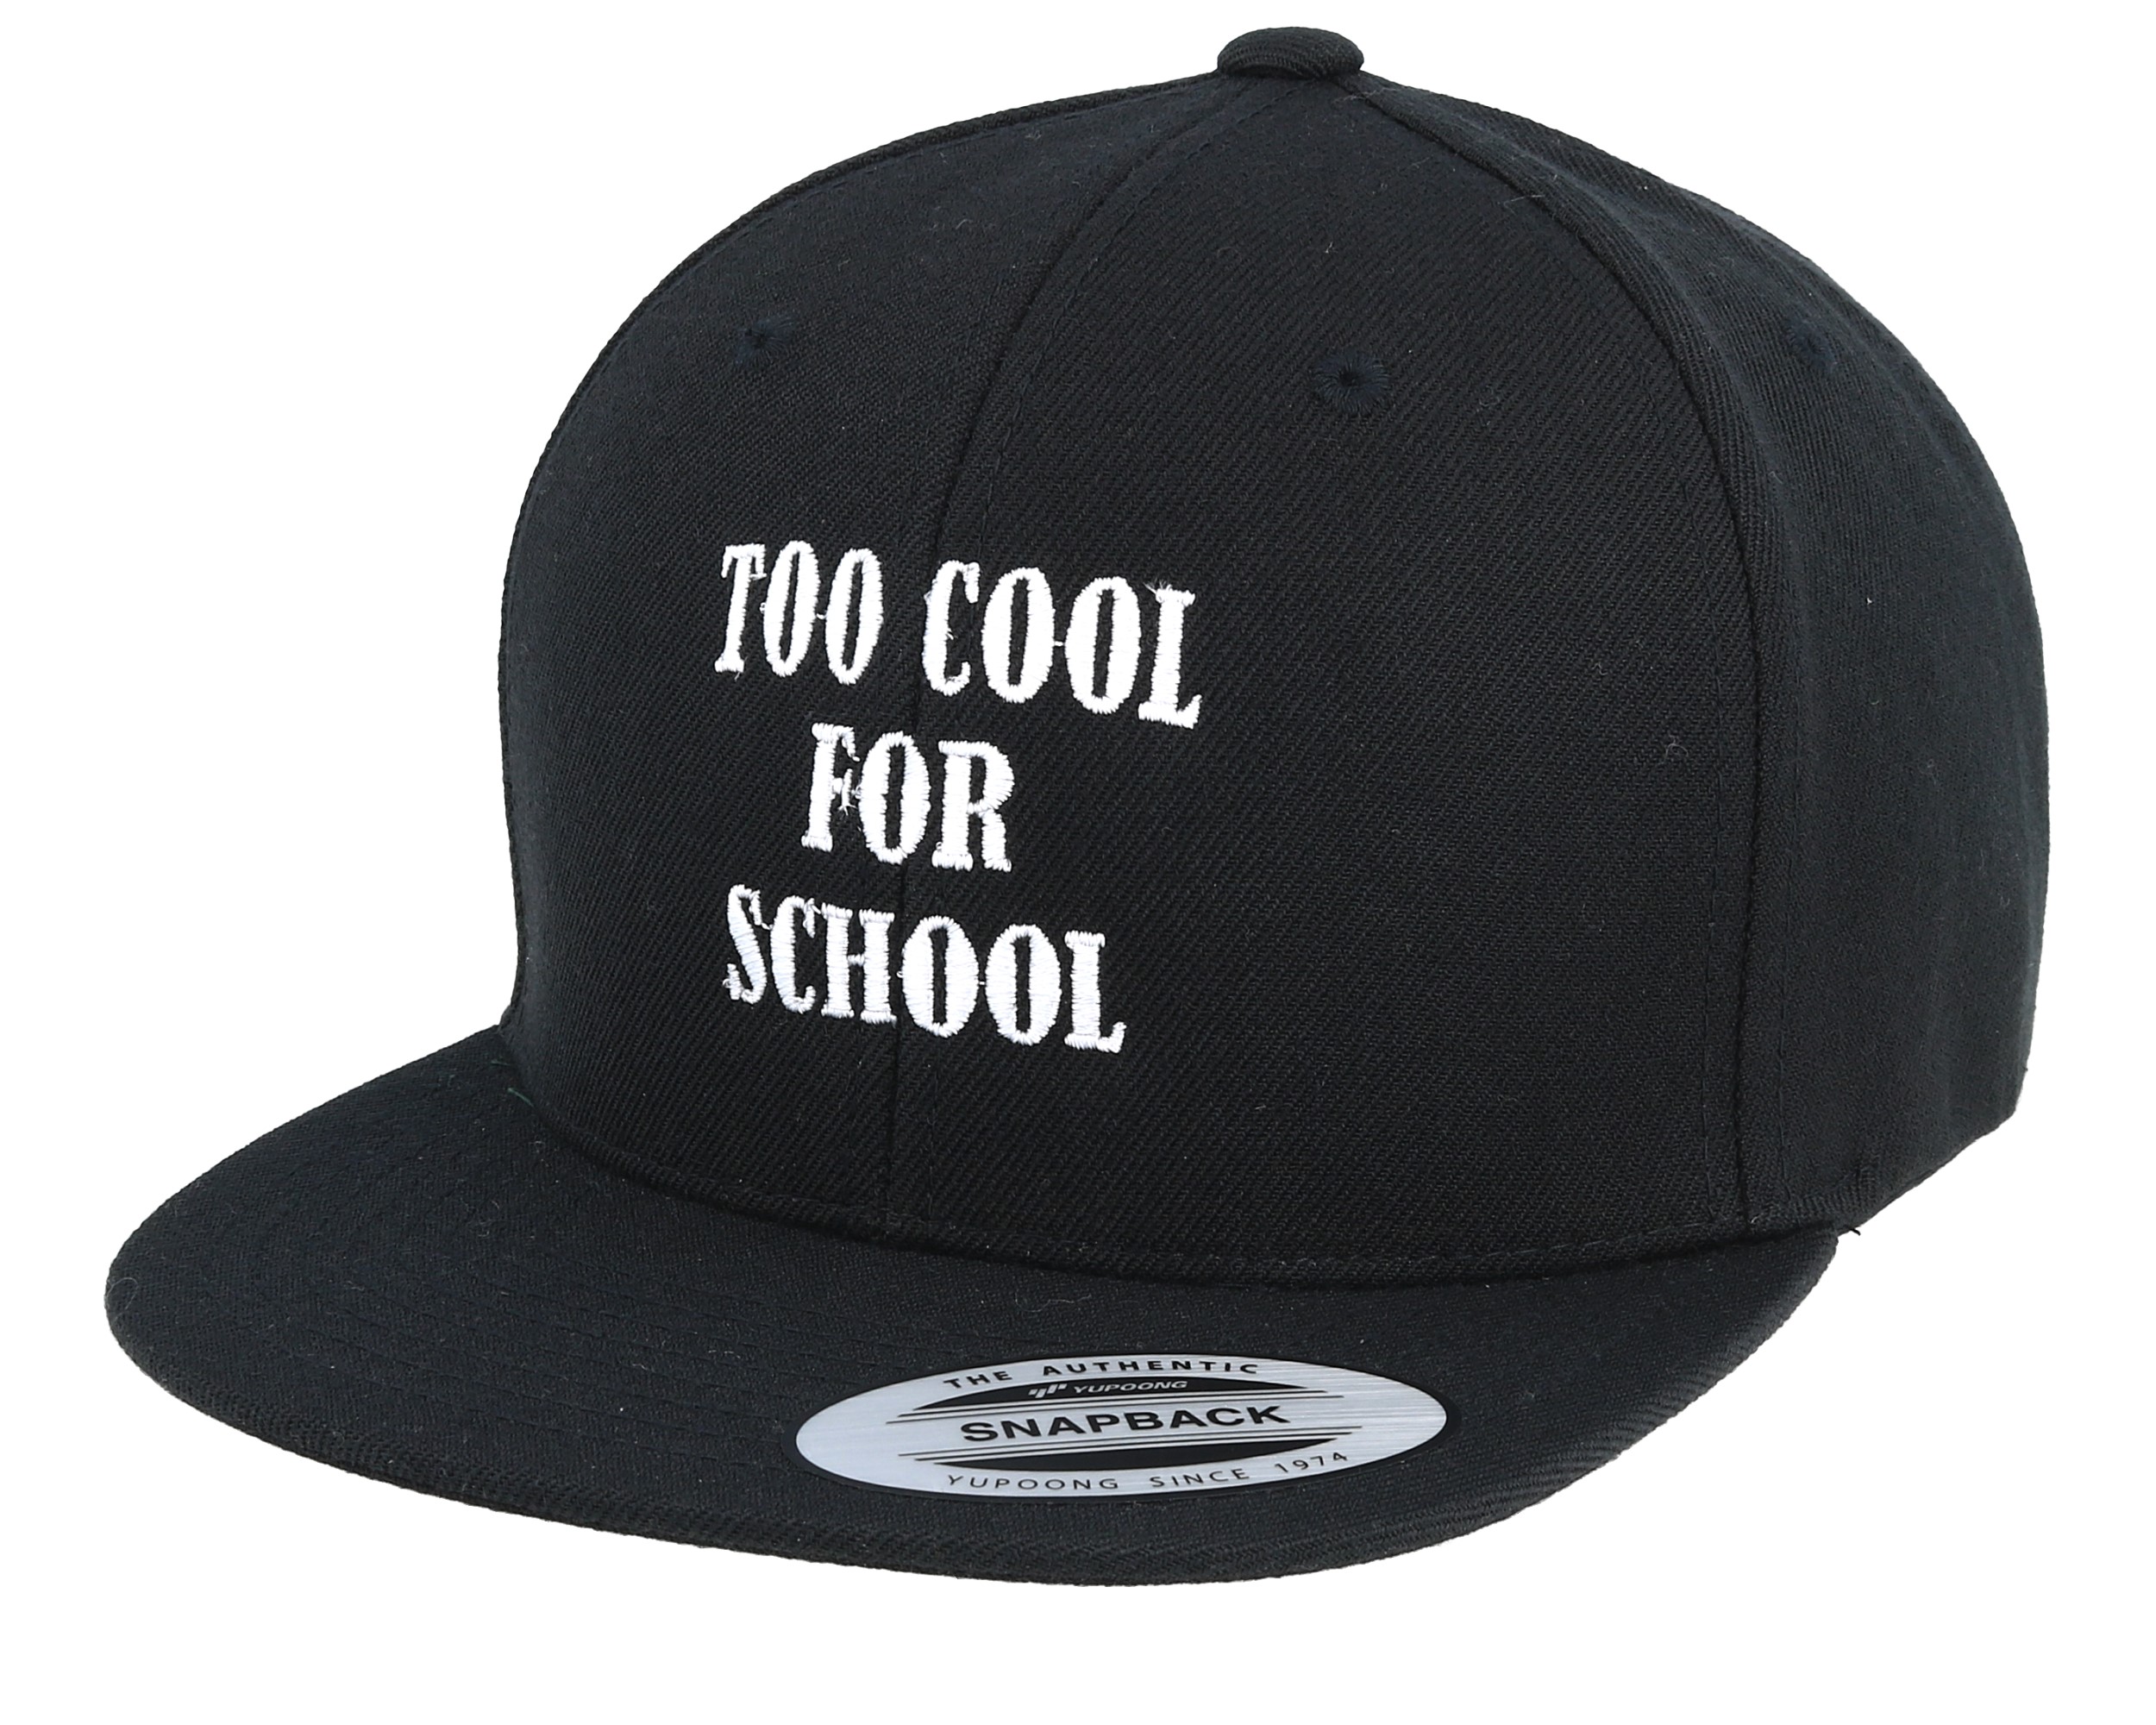 Kiddo Cap - Black Cap - Kids Too Cool for School Black Snapback @ Hatstore